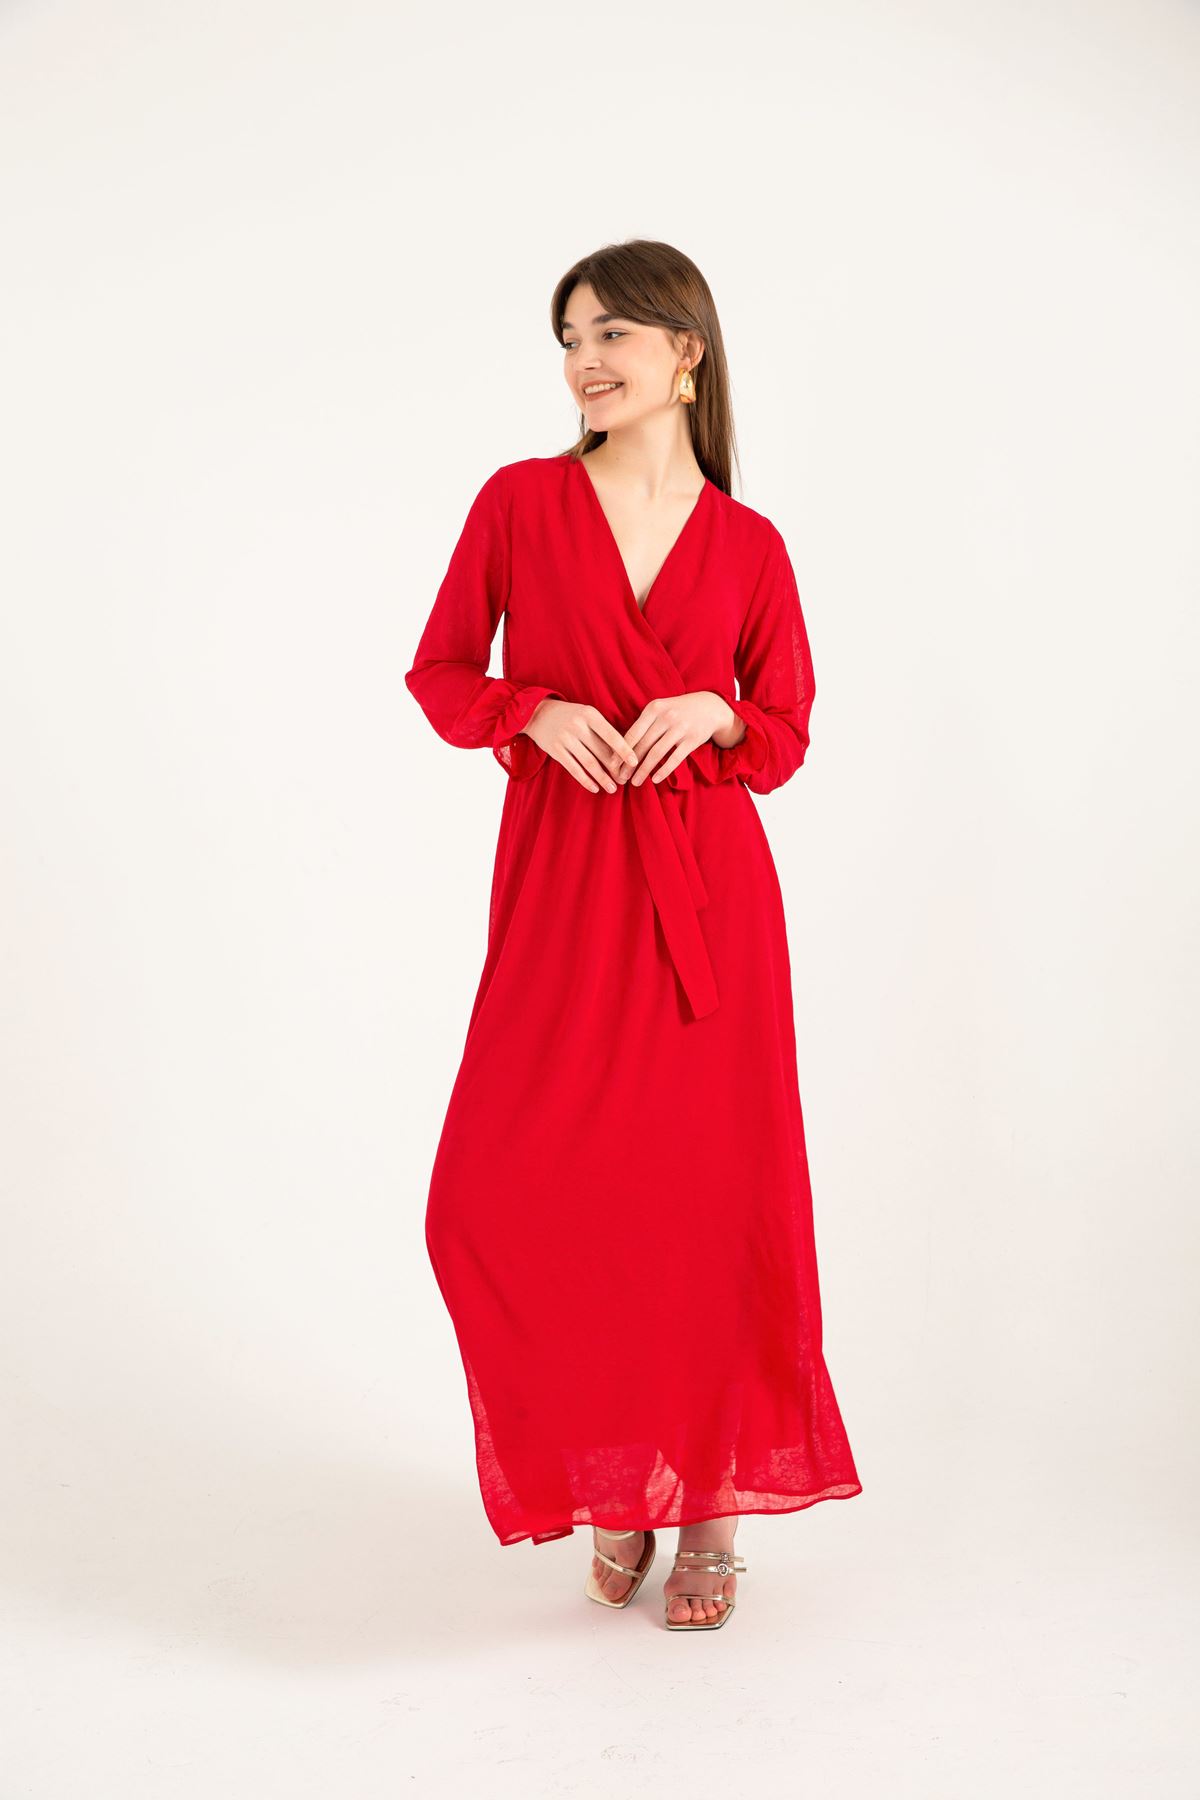 Chiffon Fabric V Neck Long Wrap Women Dress - Red